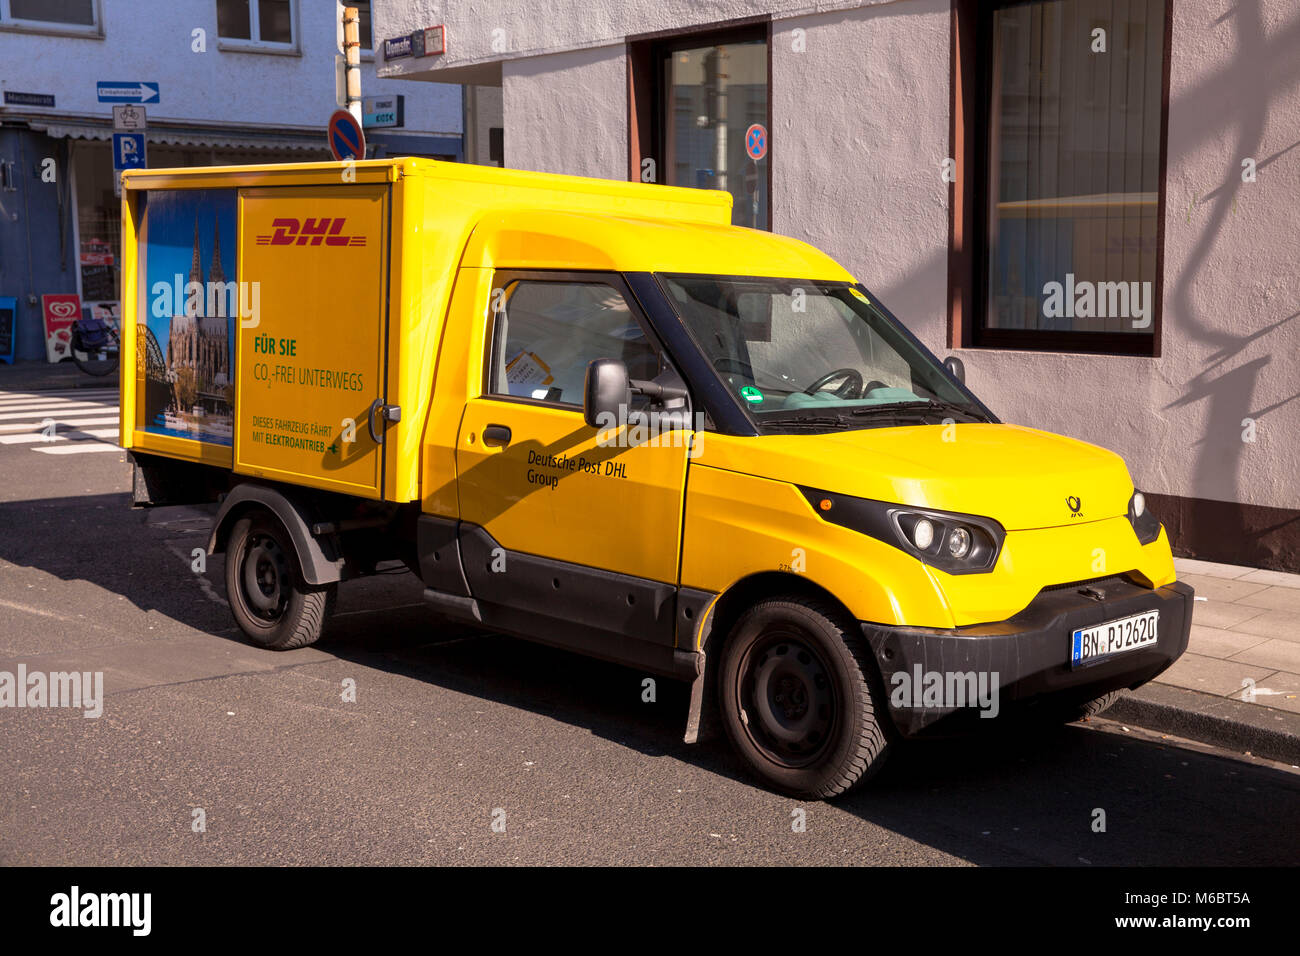 Alemania, Colonia, servicio de paquetería DHL Streetscooter vehículo eléctrico. Deutschland, Koeln, DHL- Elektrofahrzeug Streetscooter. Foto de stock